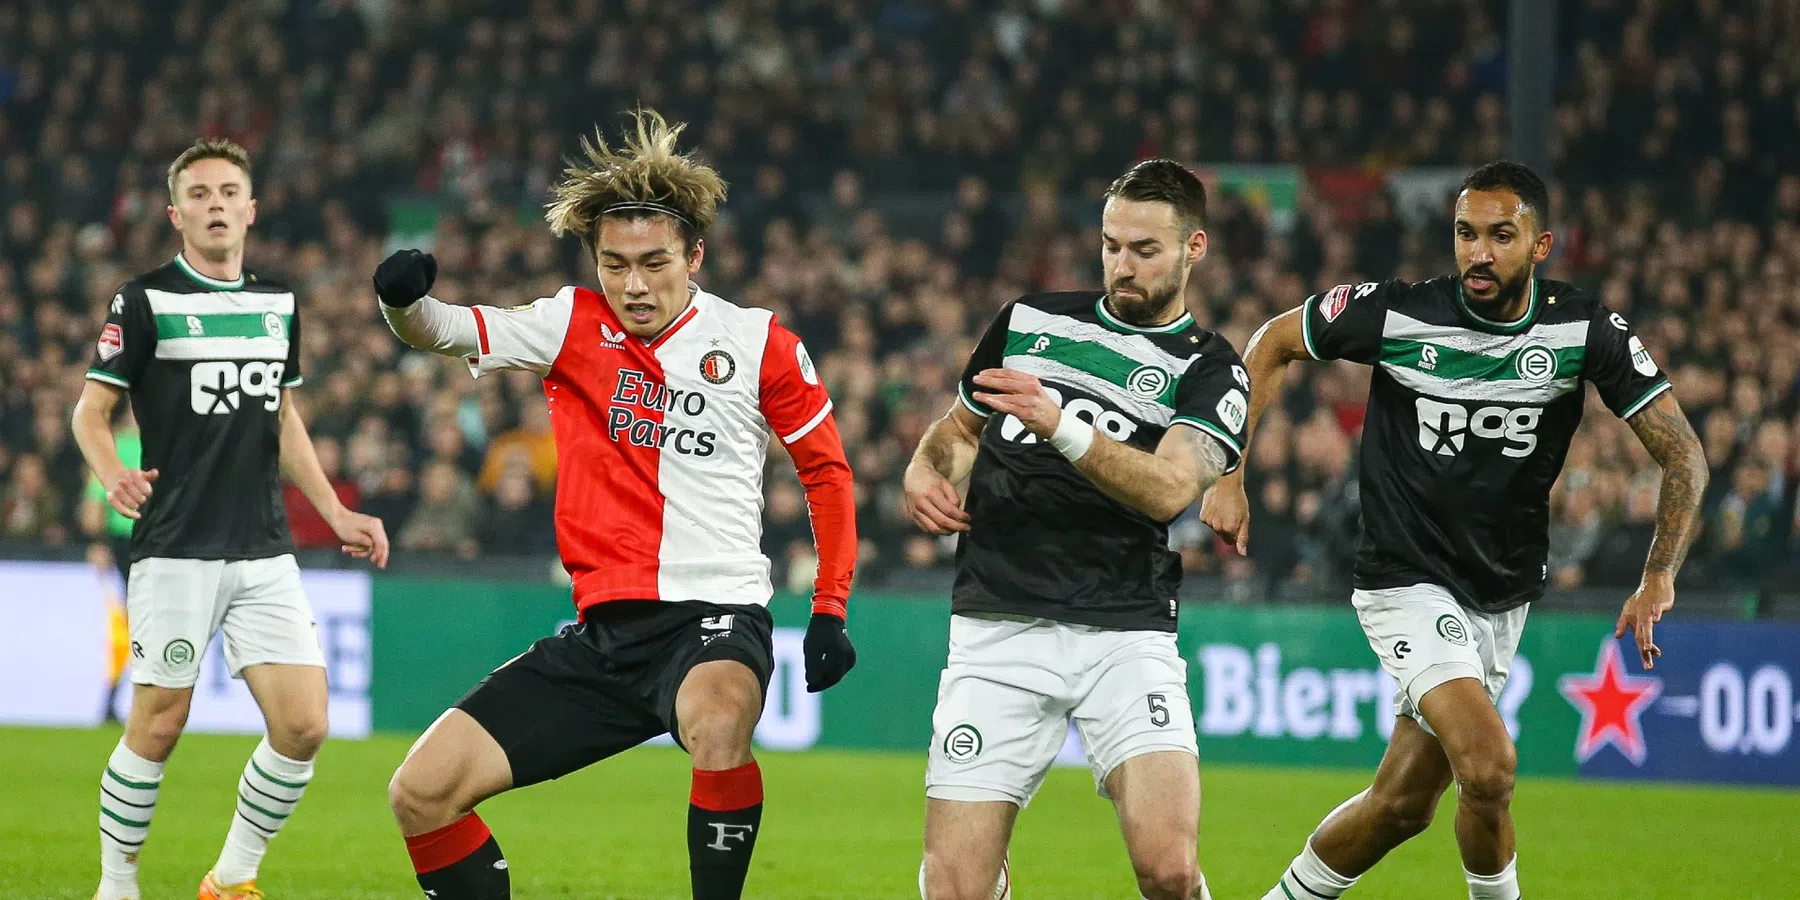 Volg hier de ontwikkelingen van het duel tussen Feyenoord en FC Groningen